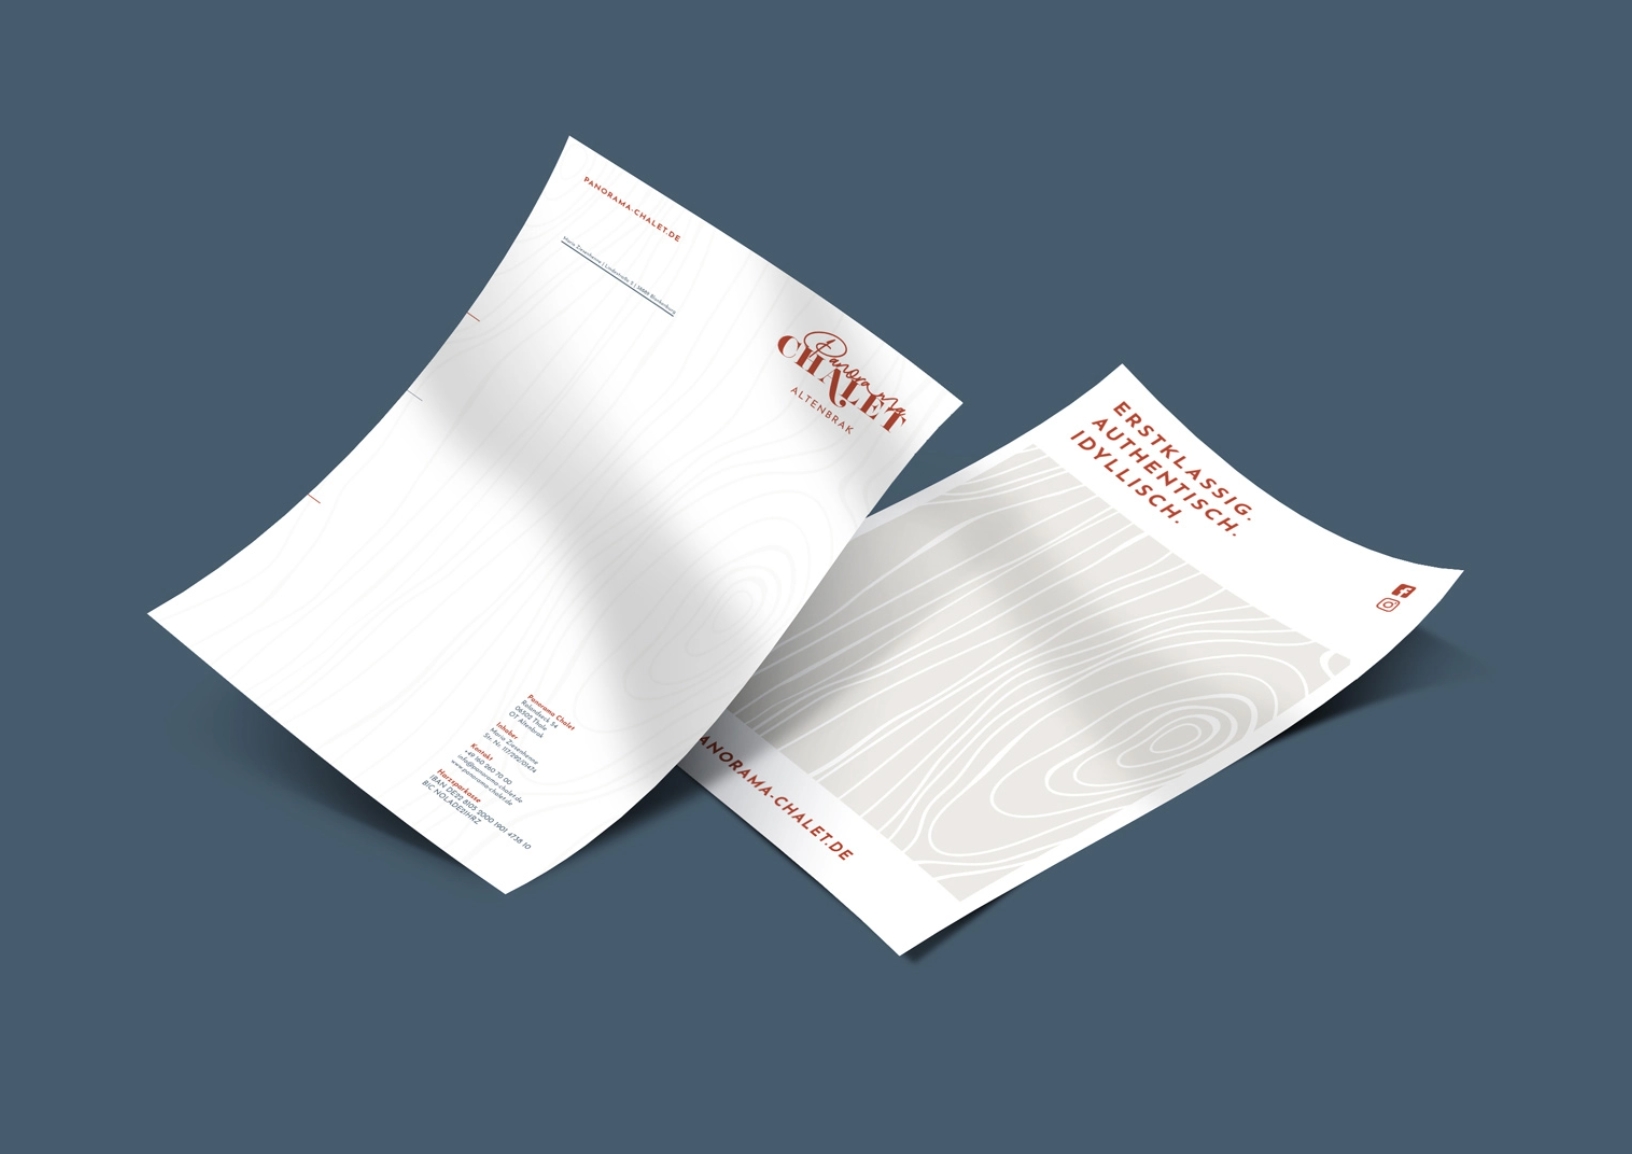 Rechnungsbogen, Briefbogen, Grafikdesign, Geschäftsausstattung